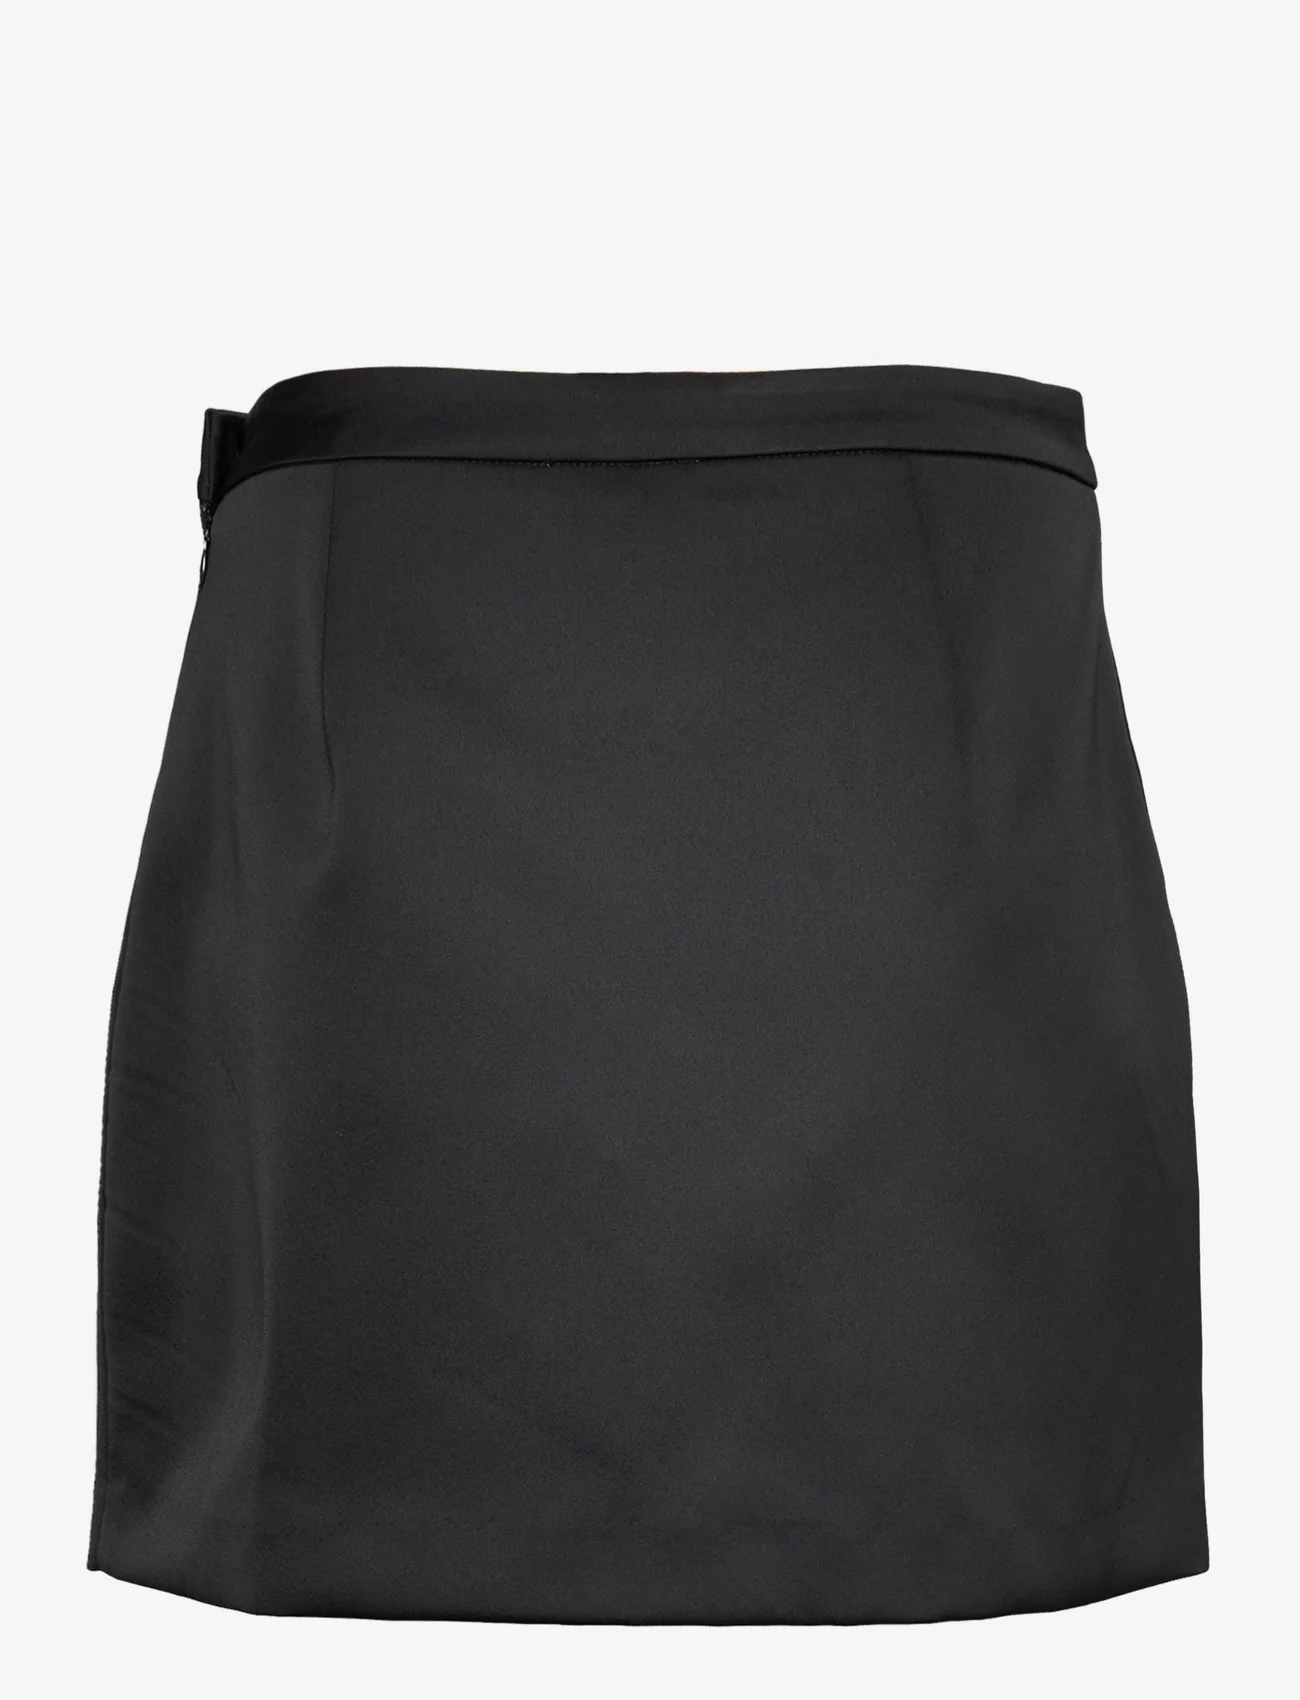 Cras - Samycras Skirt - kurze röcke - black - 1